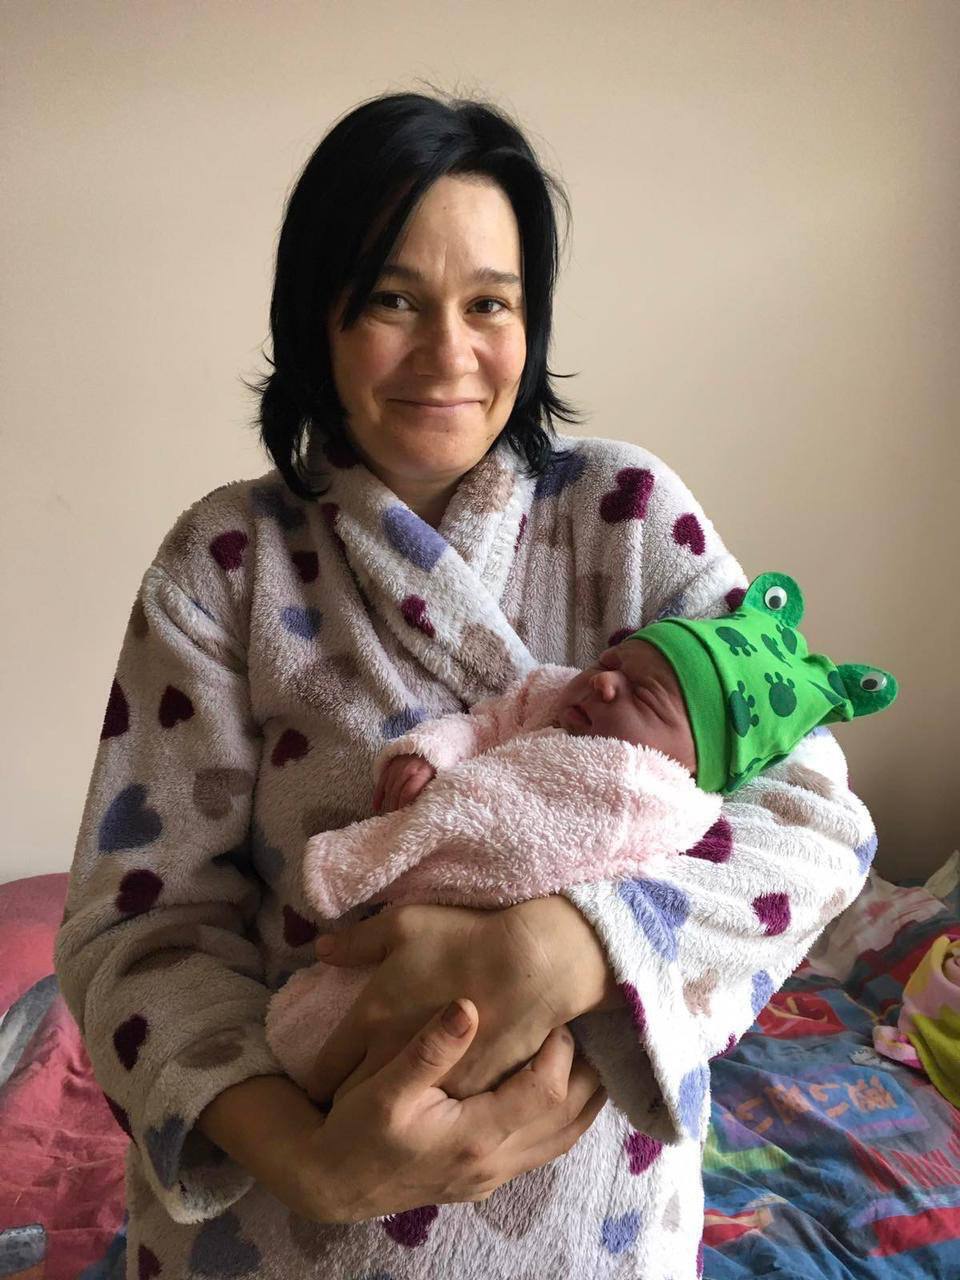 В Николаевской области женщина в новогоднюю ночь родила ребенка в скорой, которая застряла в грязи: акушерка принимала роды по скайпу. Фото